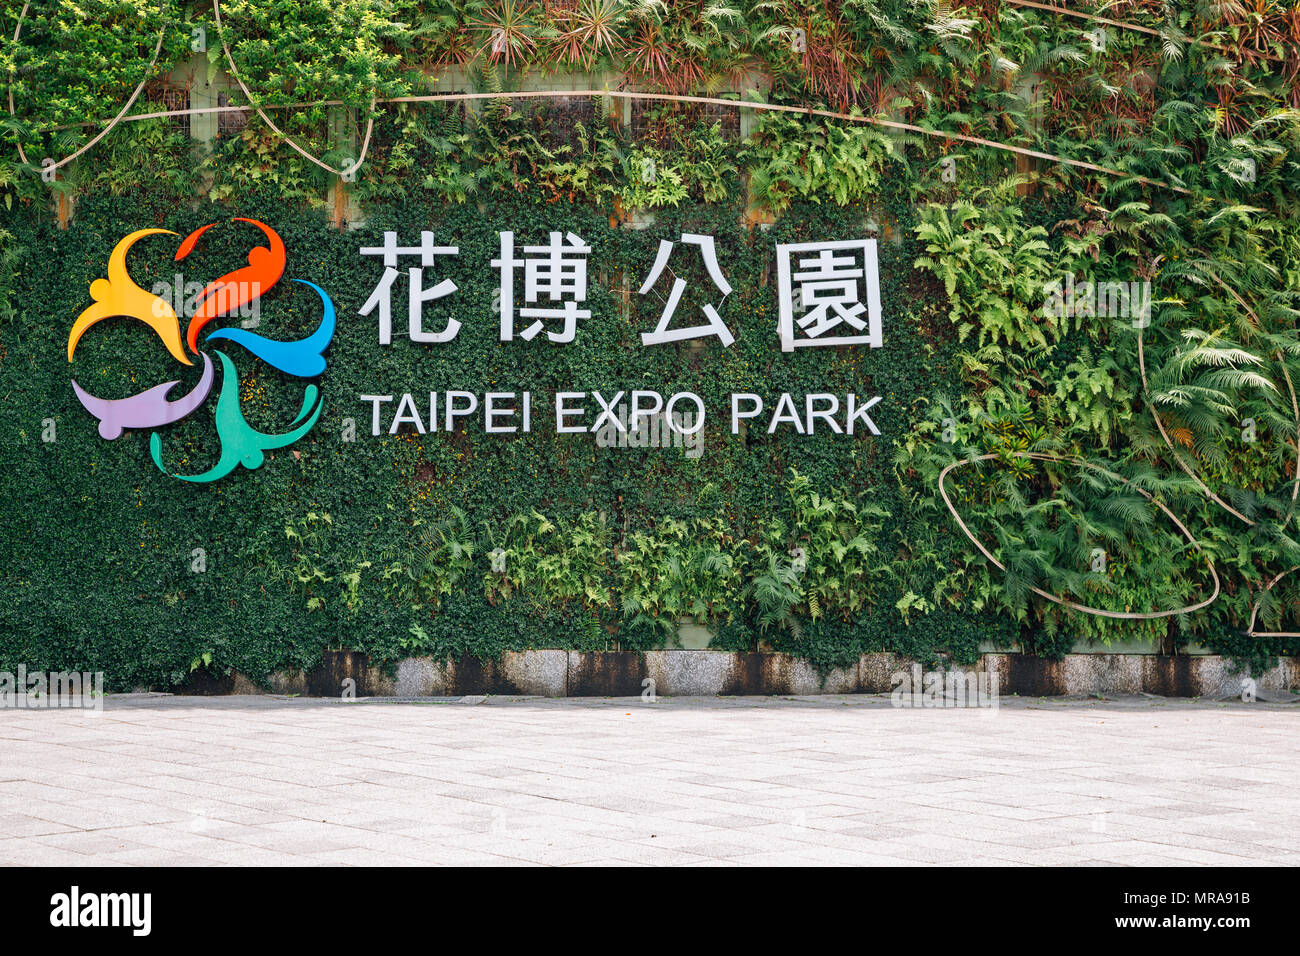 Taipei, Taiwan - April 25, 2018 : Taipei Expo Park Stock Photo